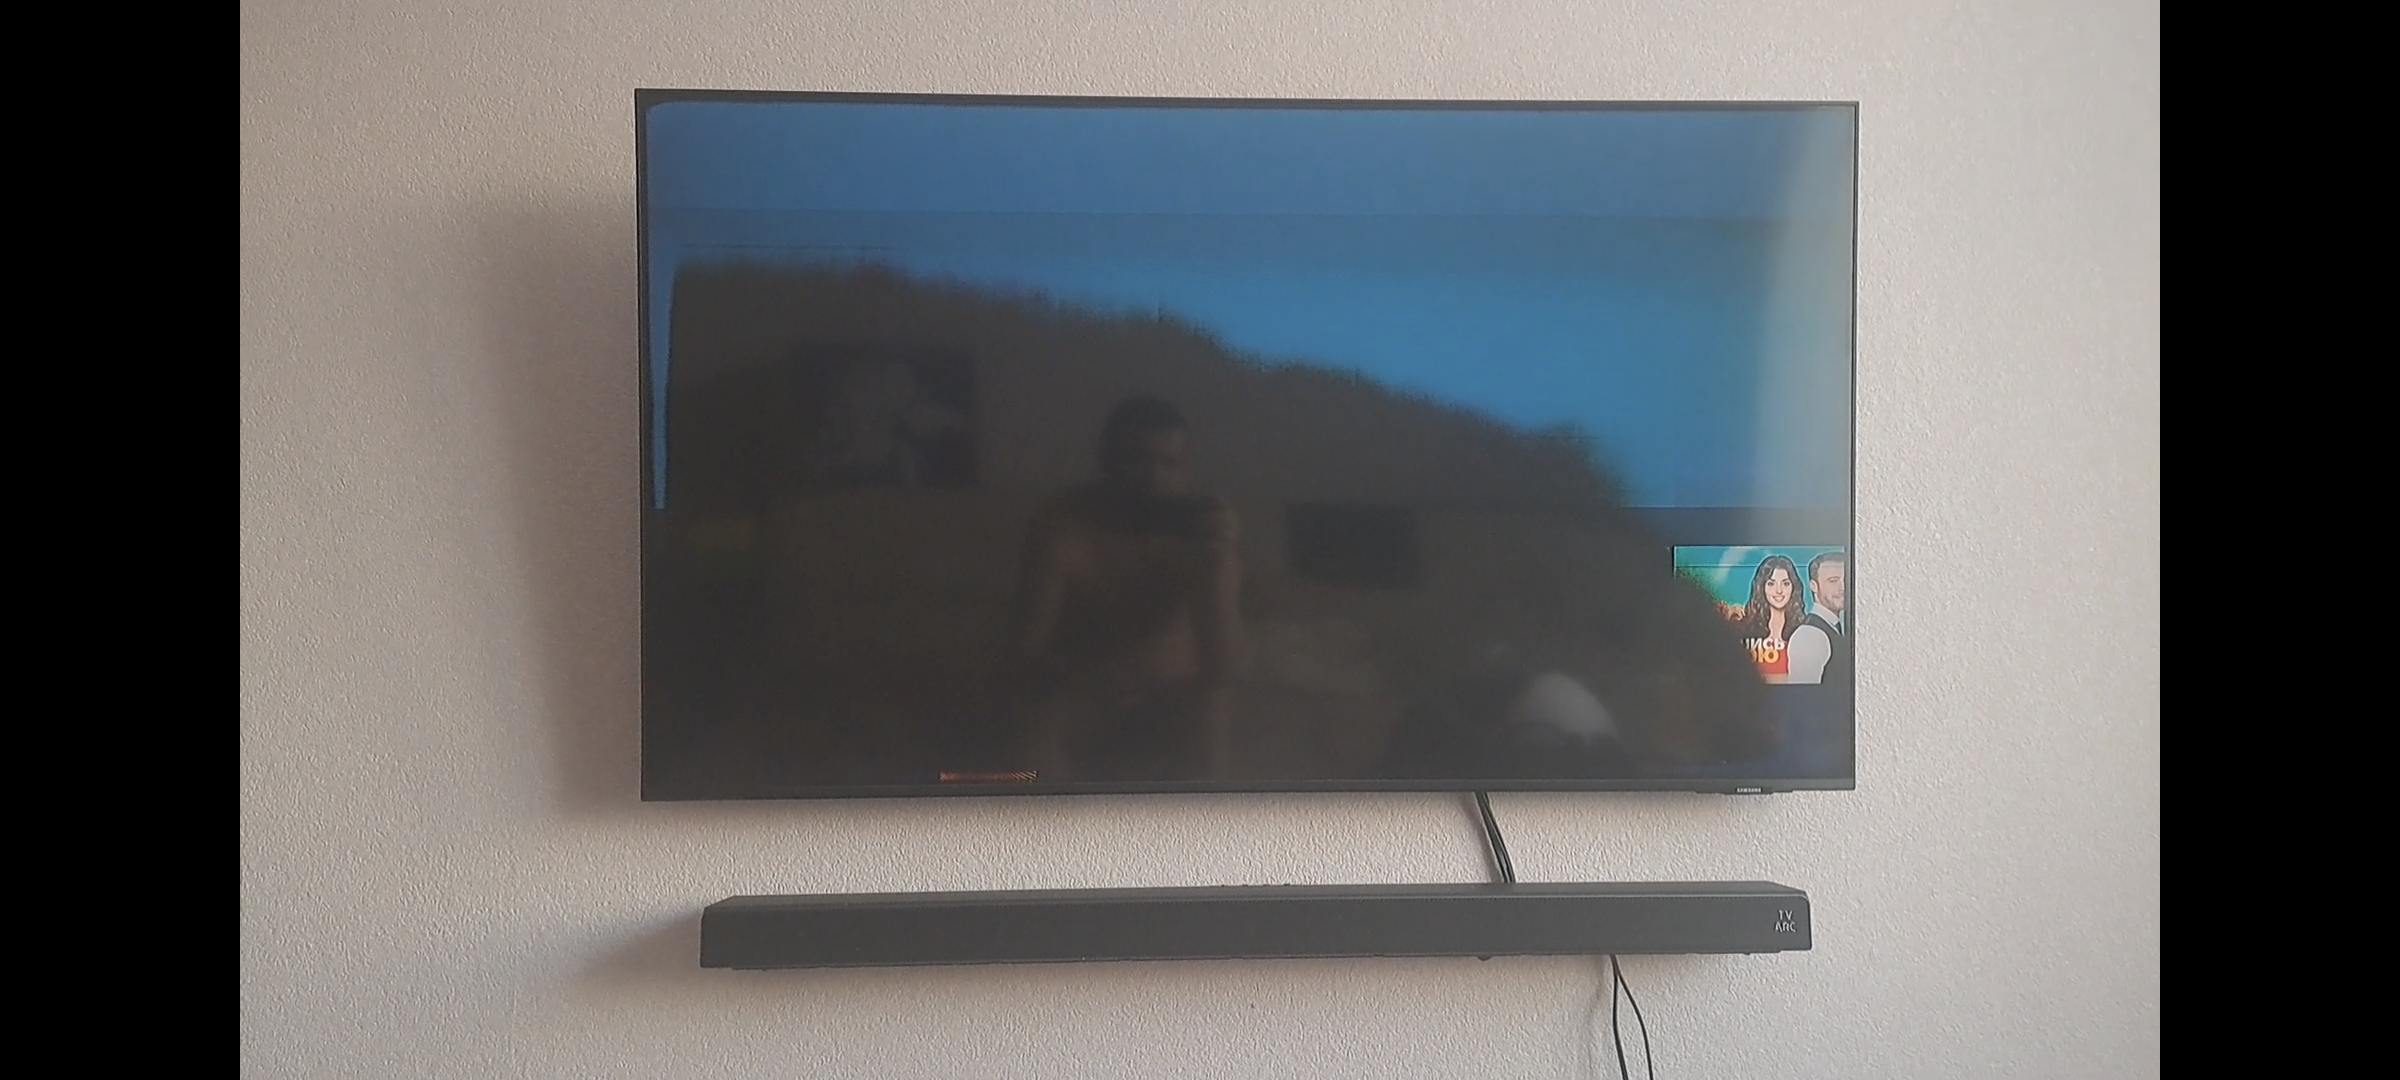 Телевизор сам перезагружается